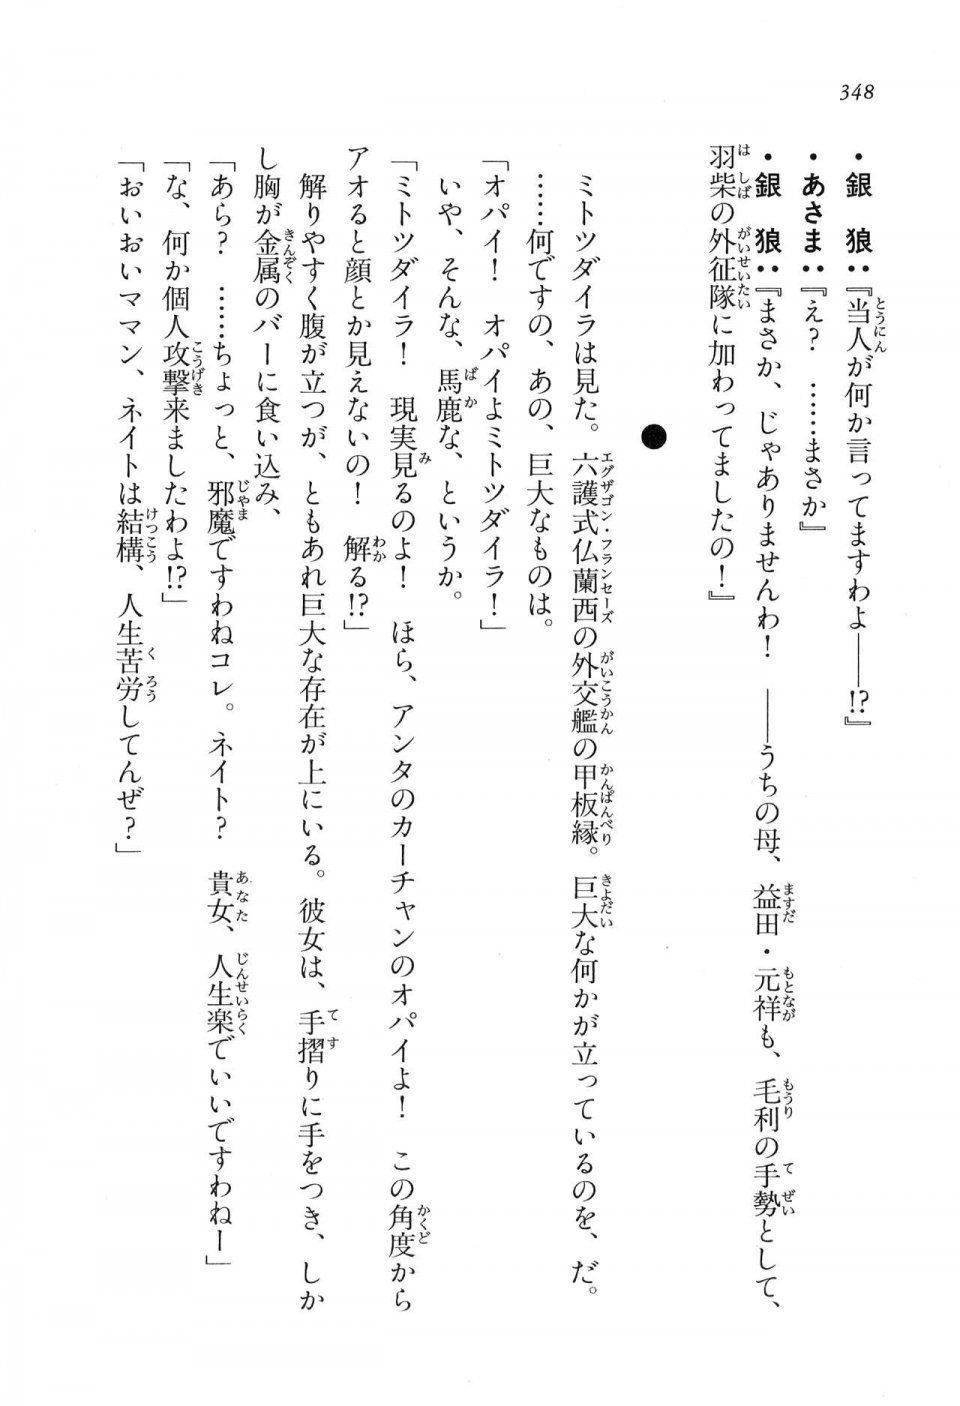 Kyoukai Senjou no Horizon LN Vol 16(7A) - Photo #348